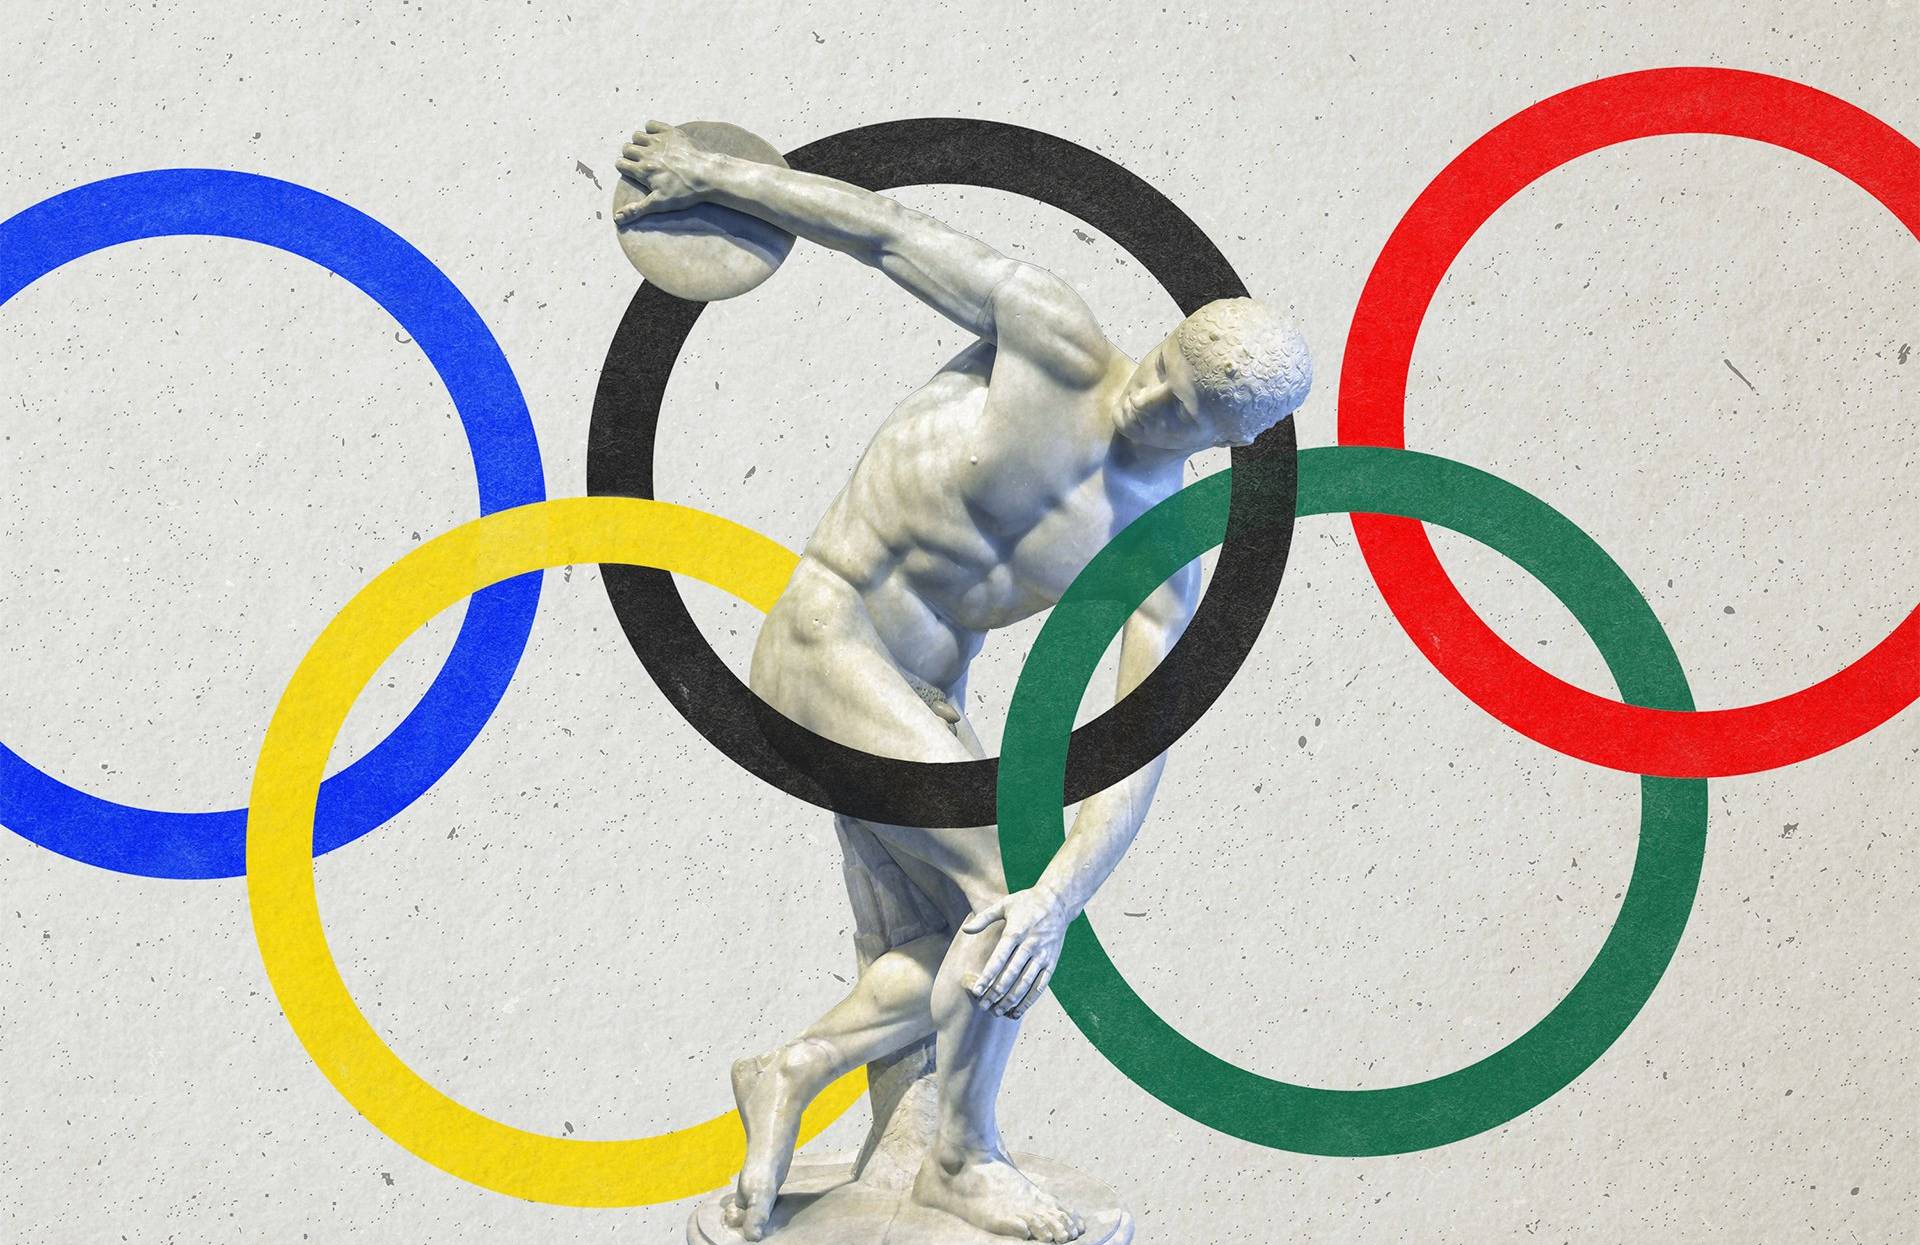 Rysunek pięciu kolorowych kół olimpijskich z figurką dyskobola w środku